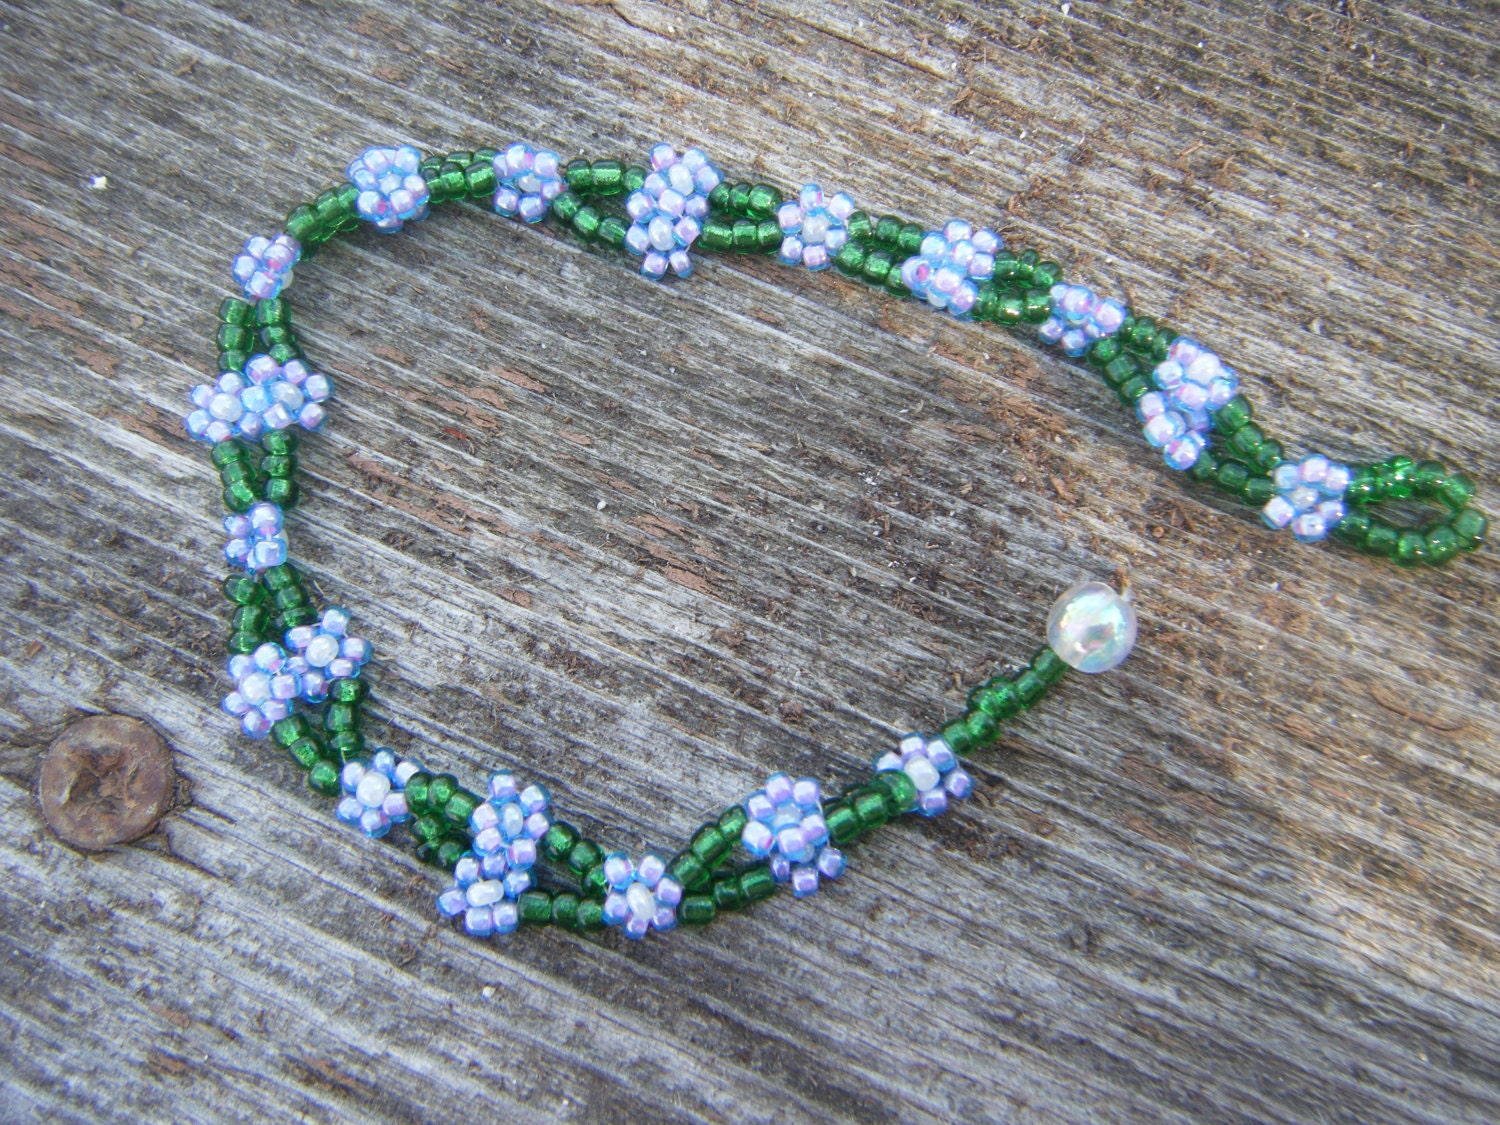 Beadwork flower chain bracelet.